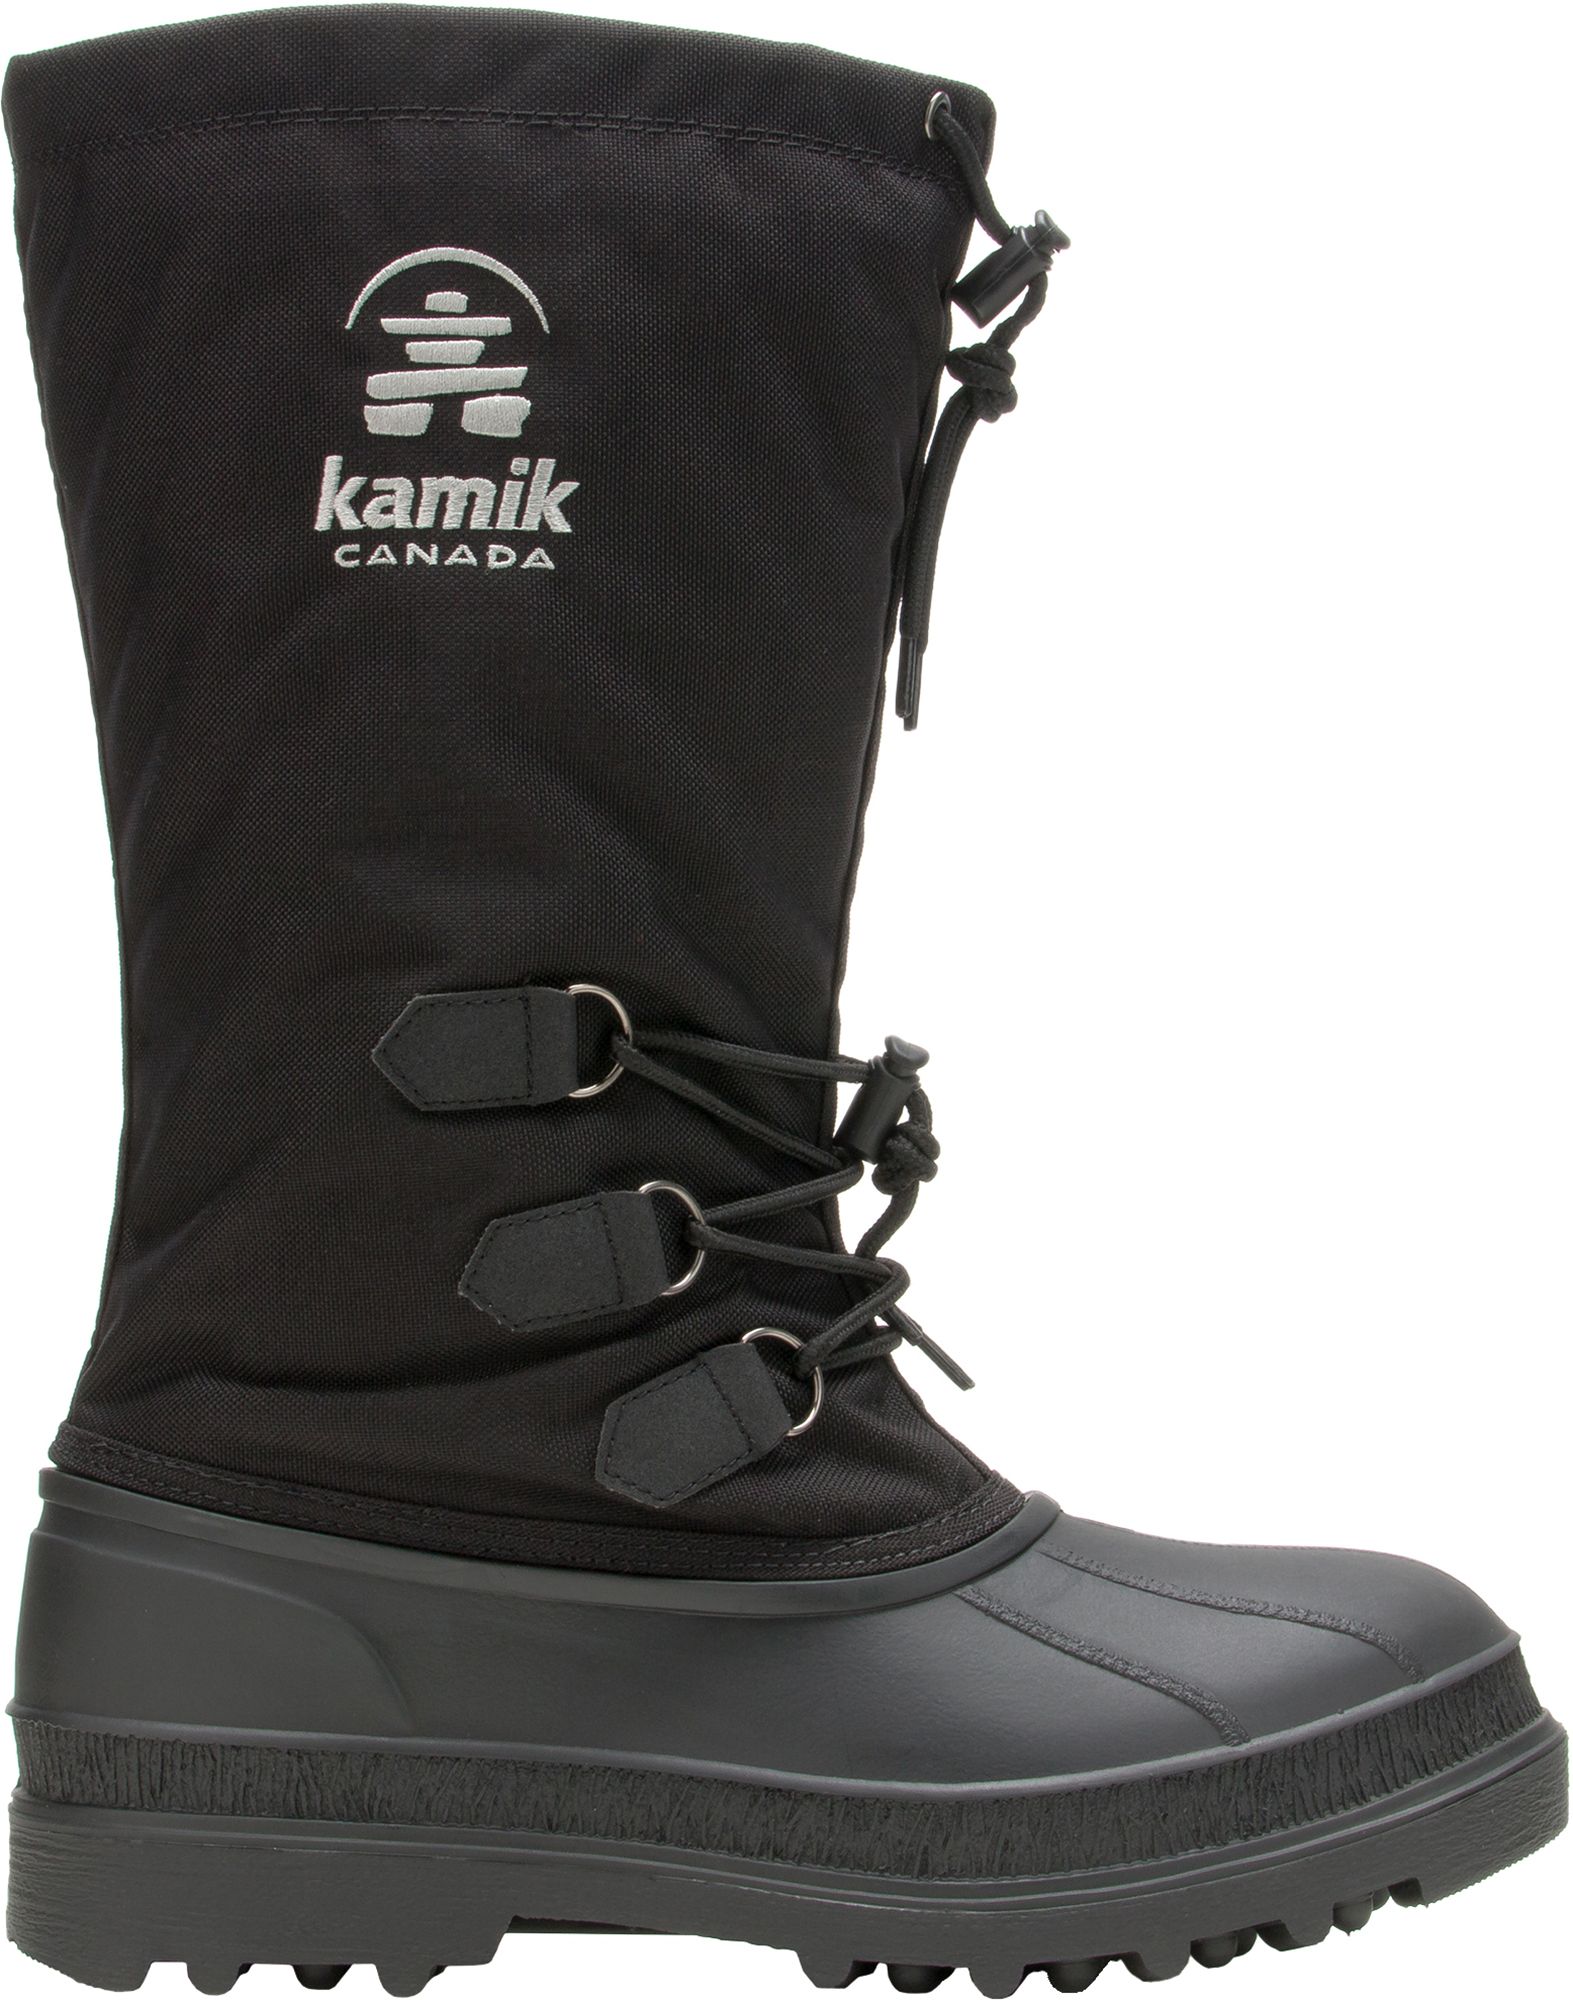 kamik boots men's waterproof